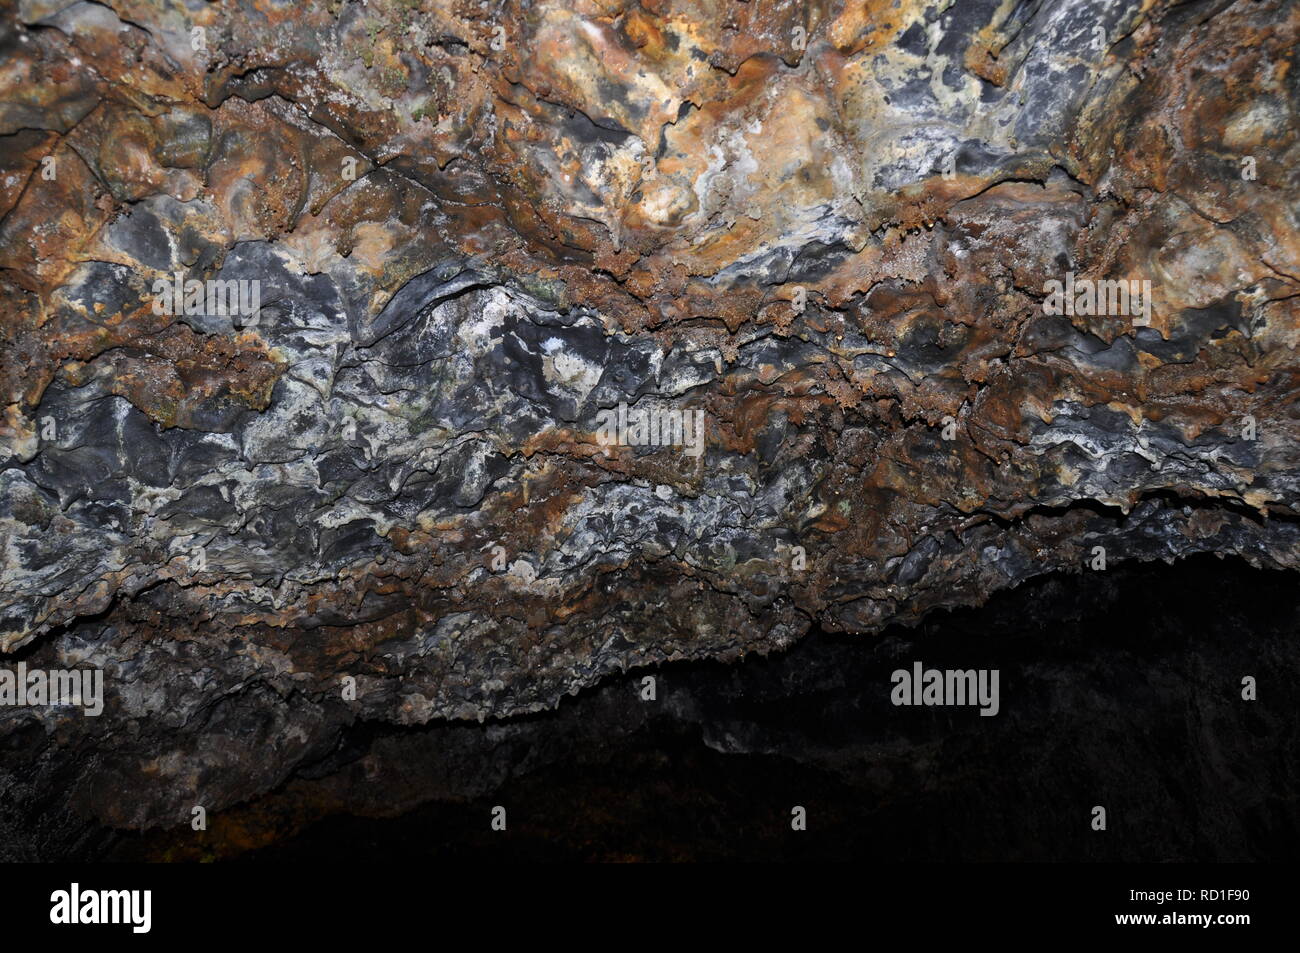 Tropfsteinhöhle in Portogallo Foto Stock